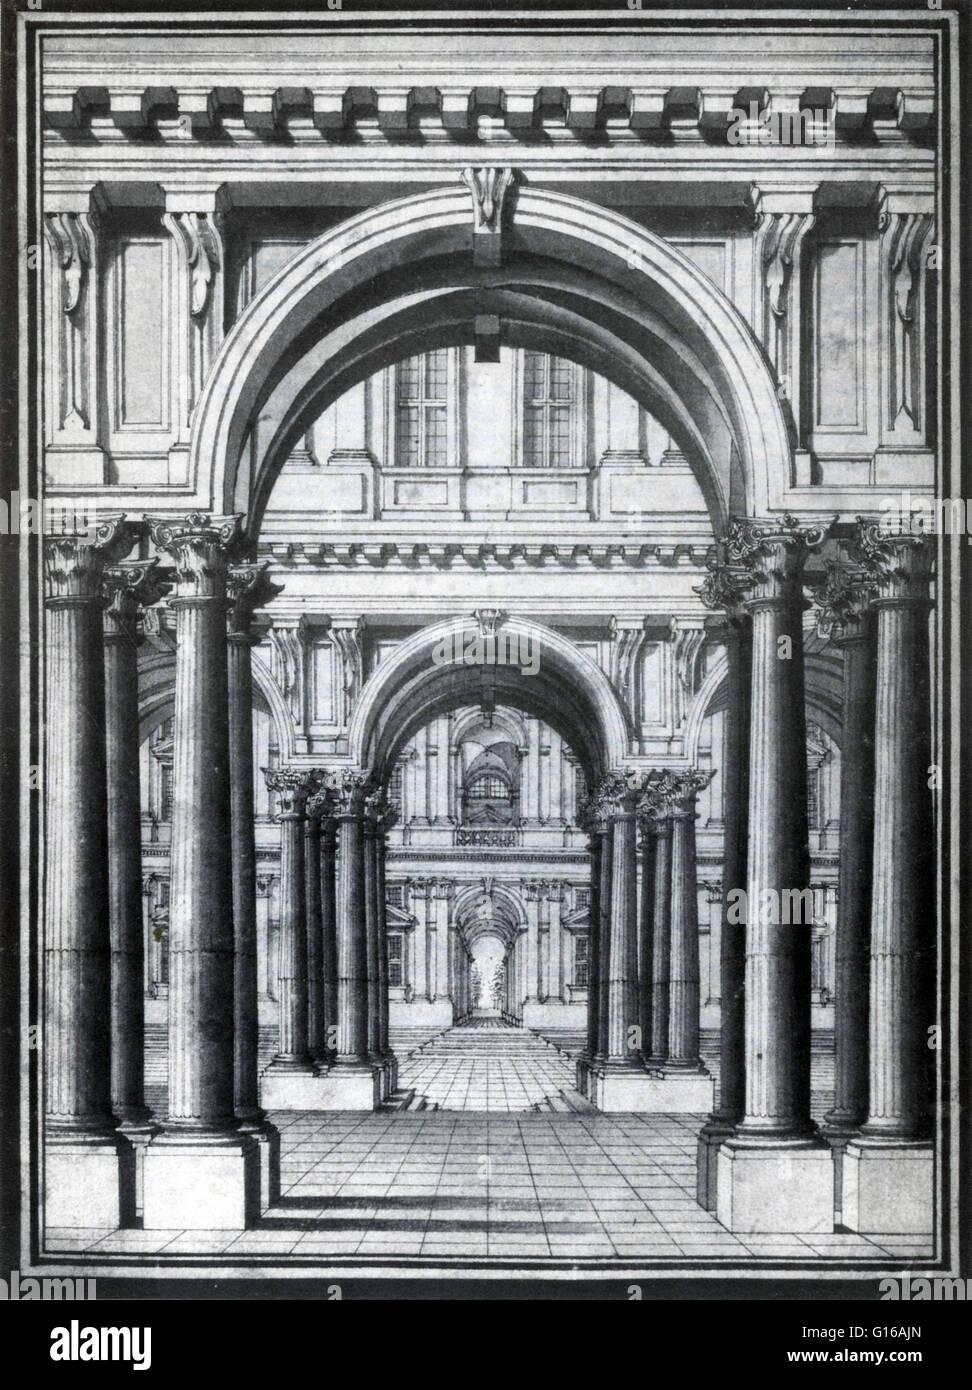 Kreidezeichnung für Bühnenbild. Torinese Schule, 1700's. Perspektive, im Rahmen der Vision und der visuellen Wahrnehmung, ist die Art und Weise, in der Objekte für das Auge, basierend auf ihre räumliche Attribute erscheinen; oder ihre Maße und die Position des Auges relativ zu Stockfoto